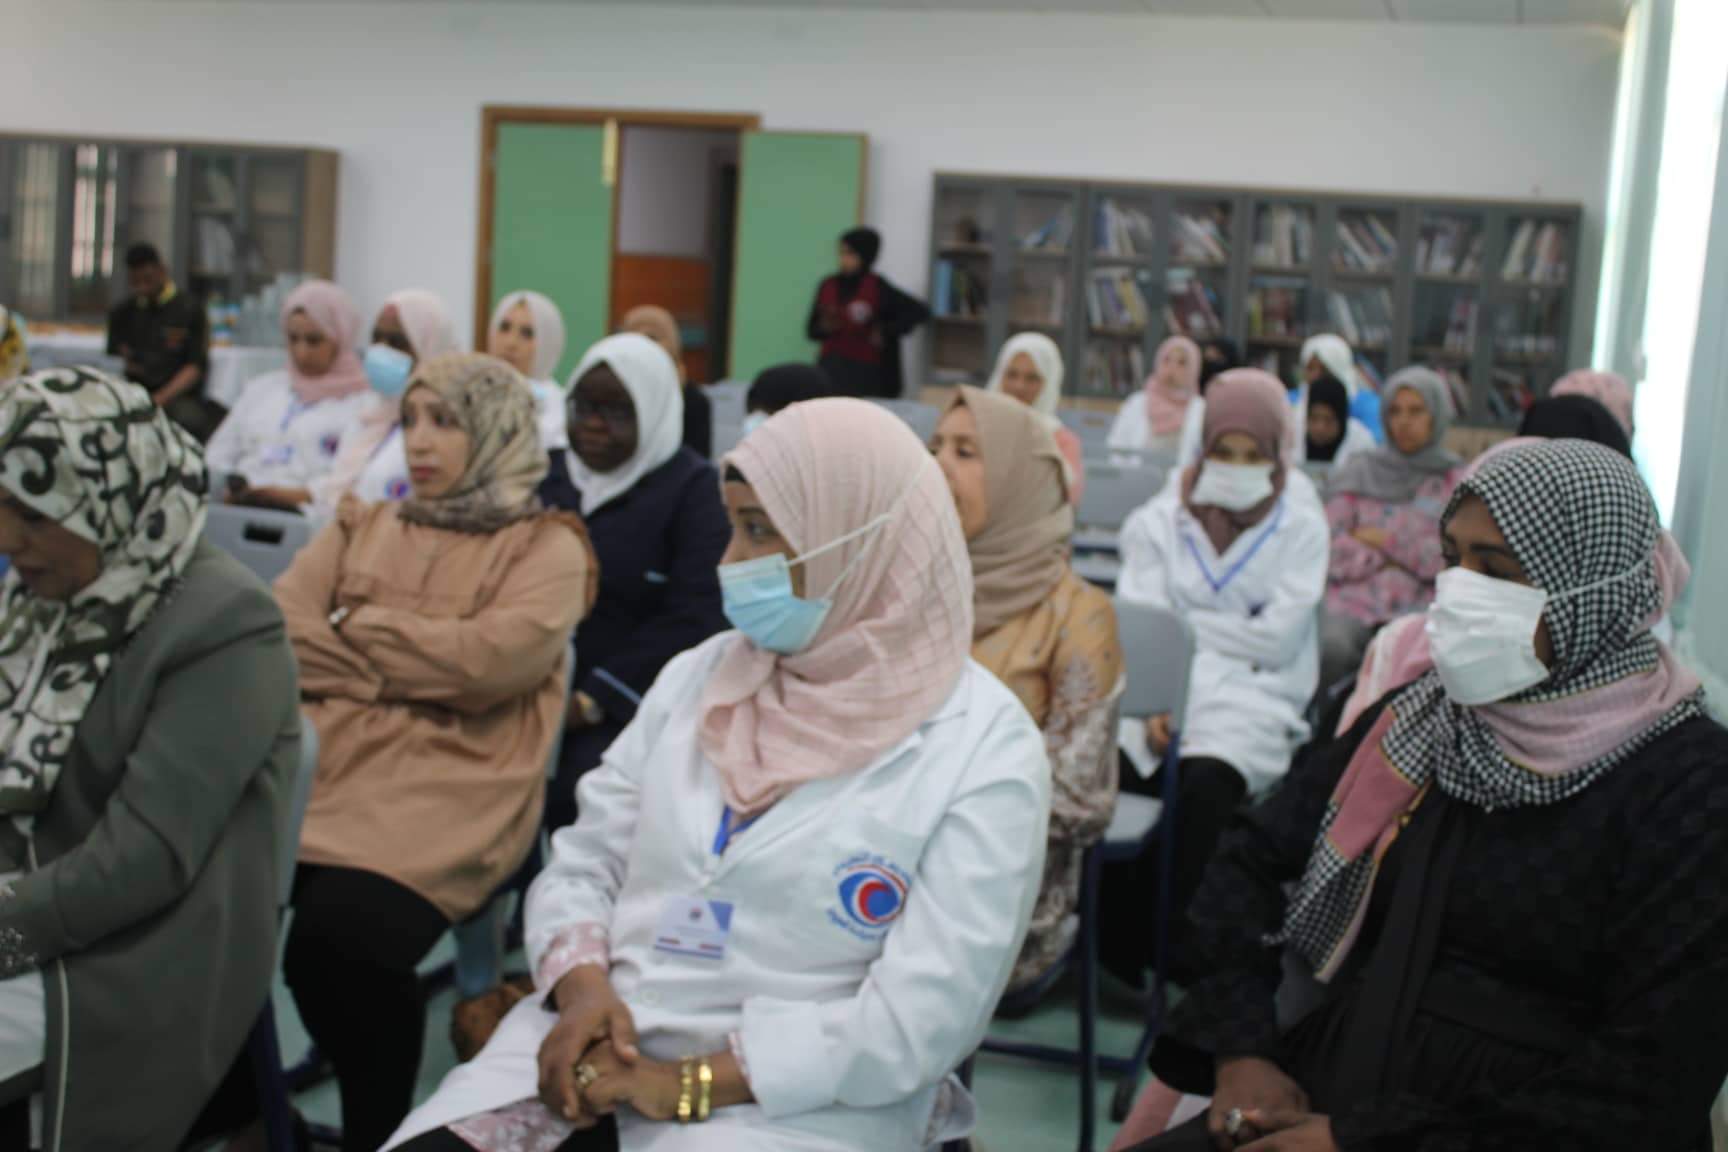 مستشفى بنغازي التعليمي لجراحة العيون تحتفل باليوم العالمي للتمريض